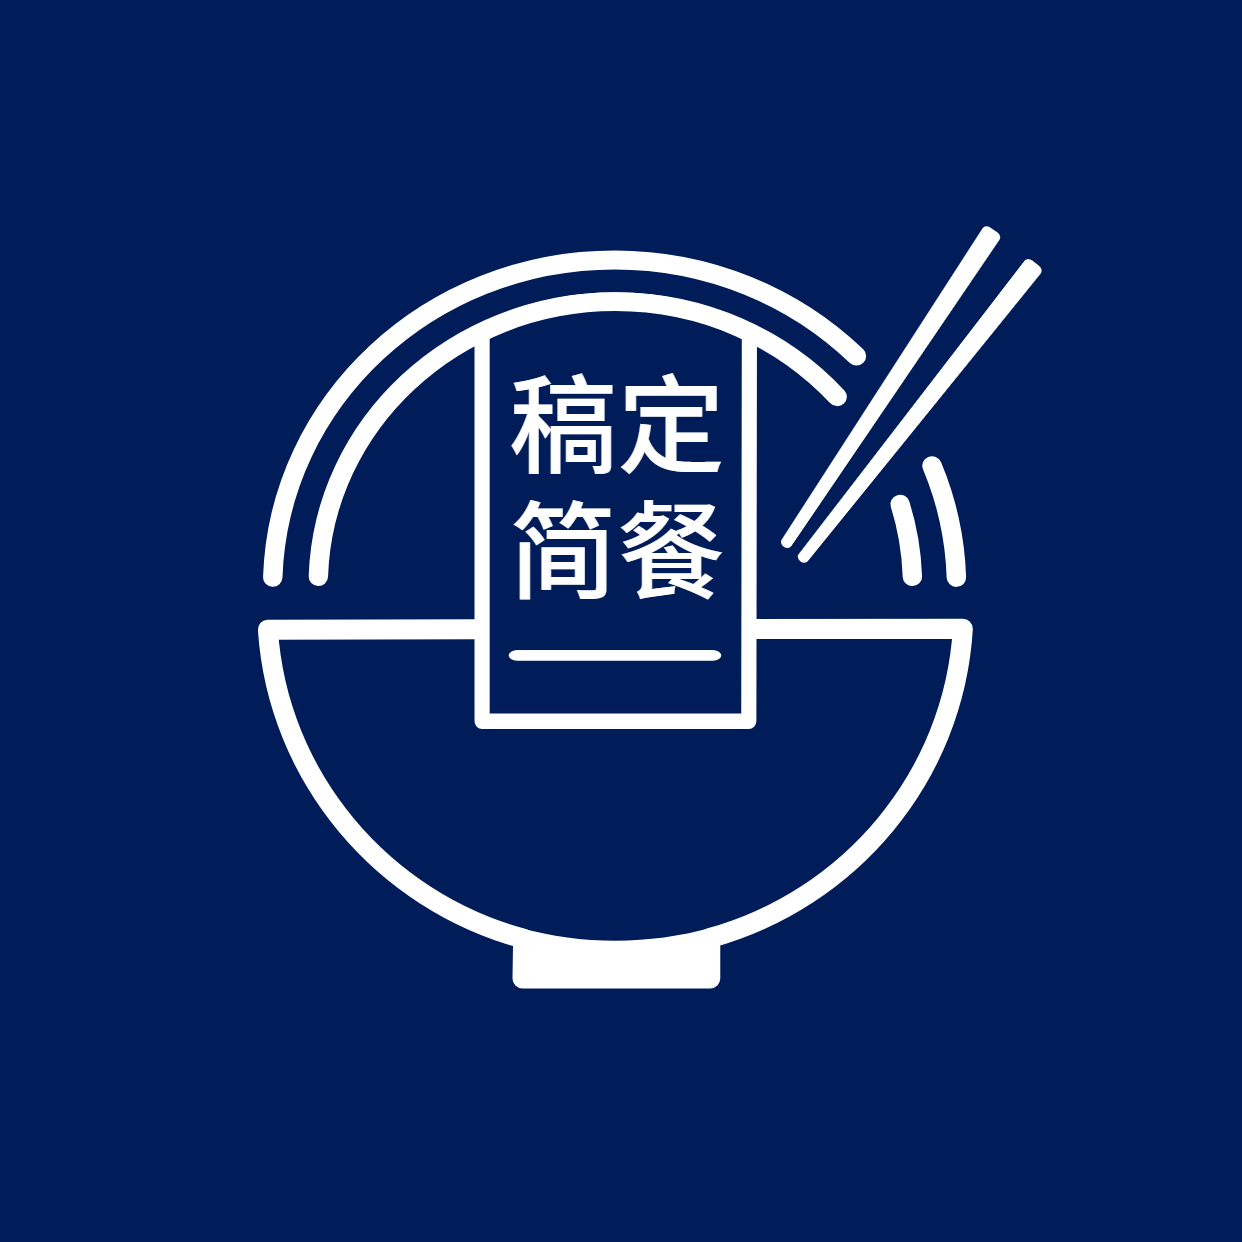 Logo头像餐饮美食简餐店标创意简约